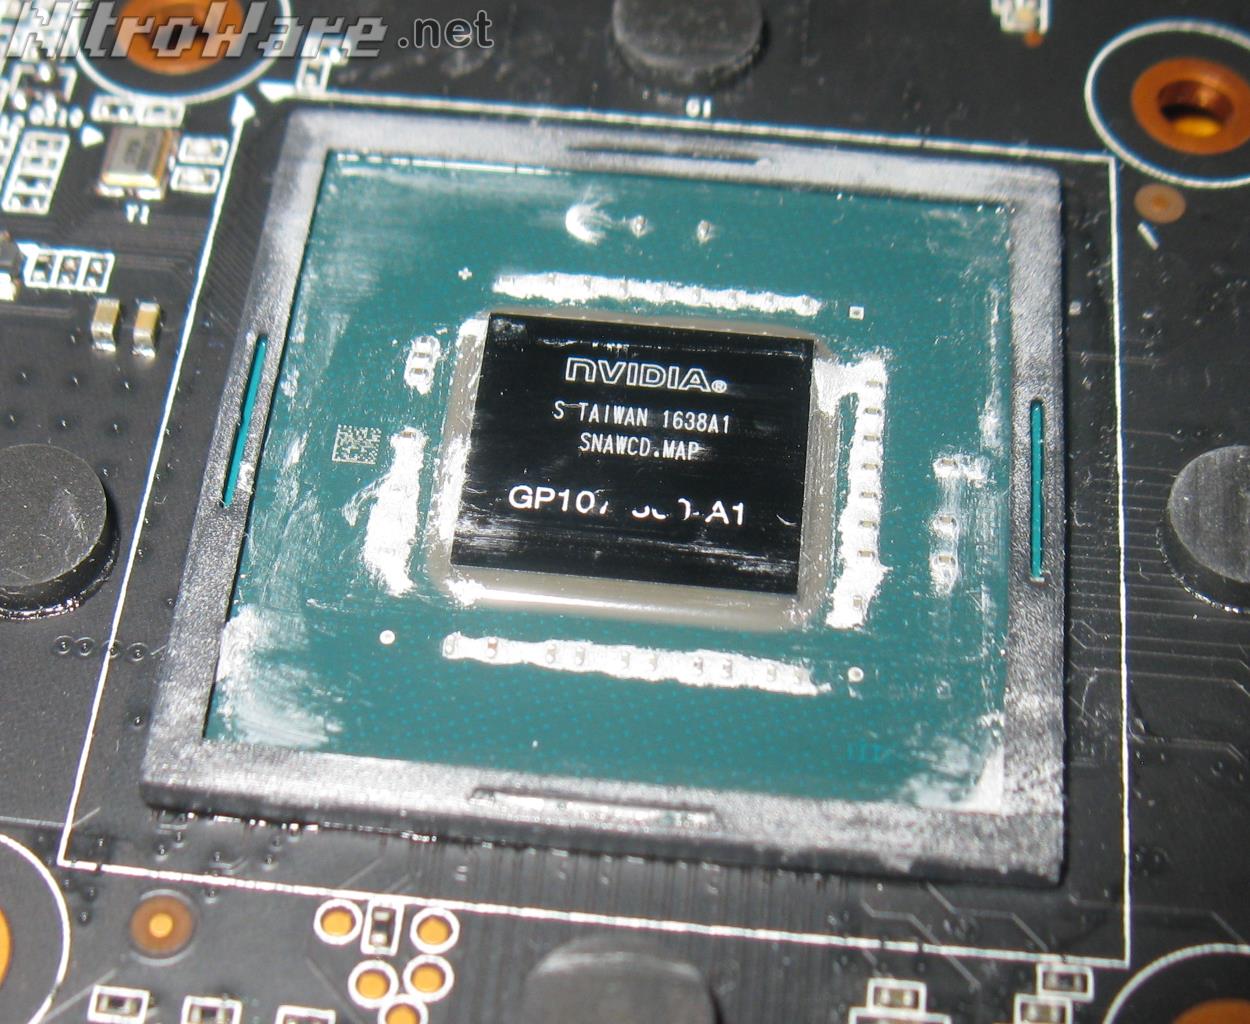 NVIDIA GP107 GPU GTX 1050 die shot